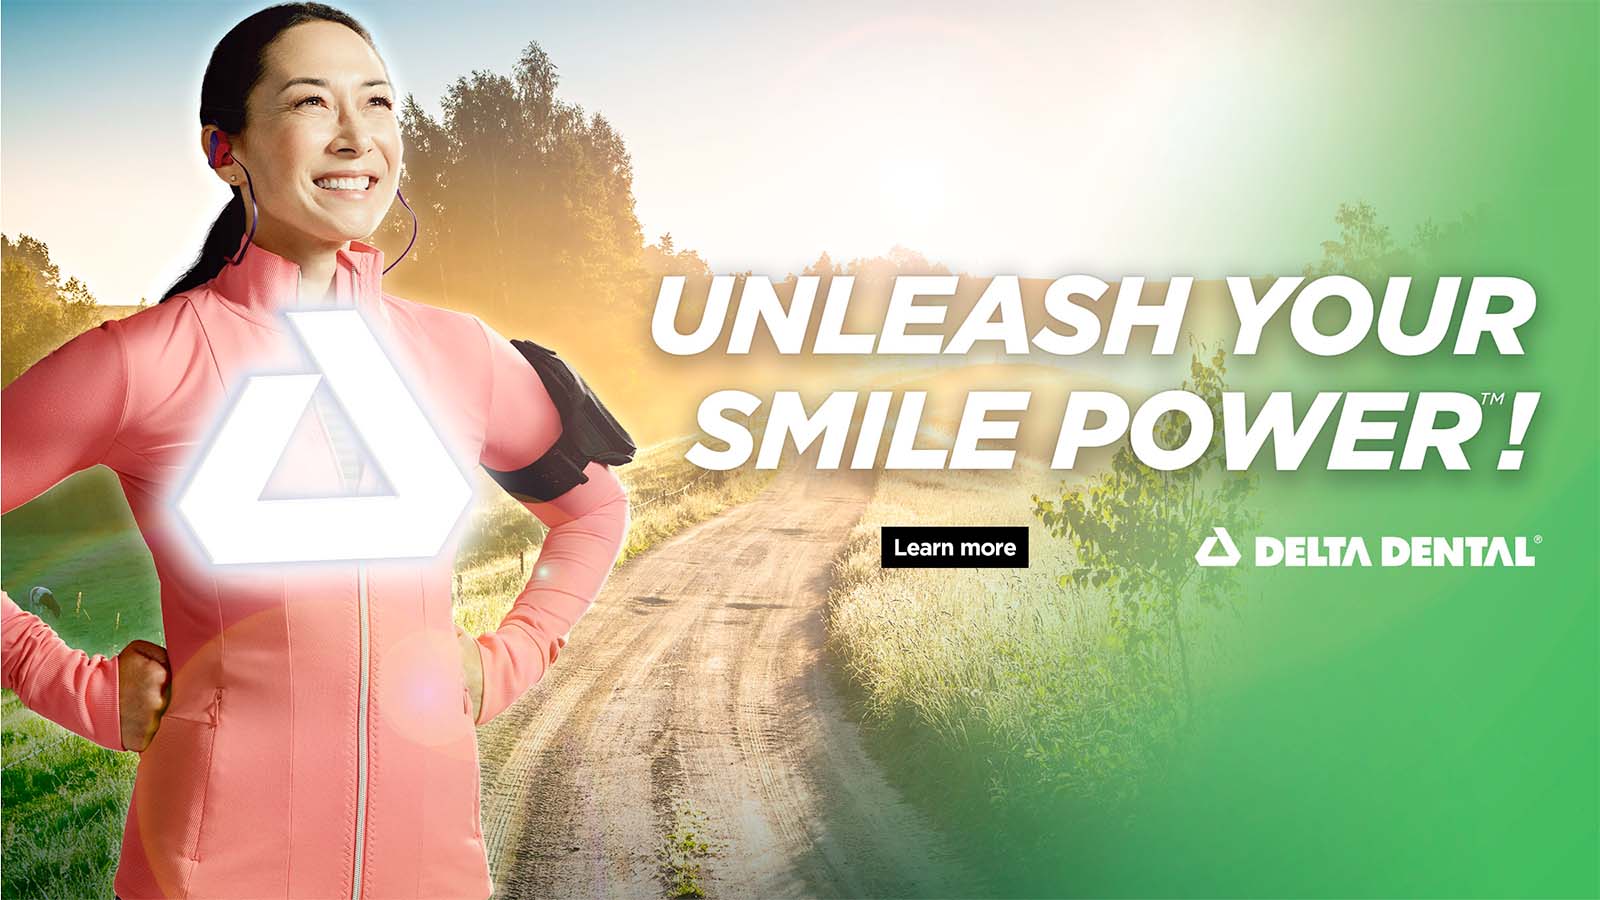 Unleash your smile power!